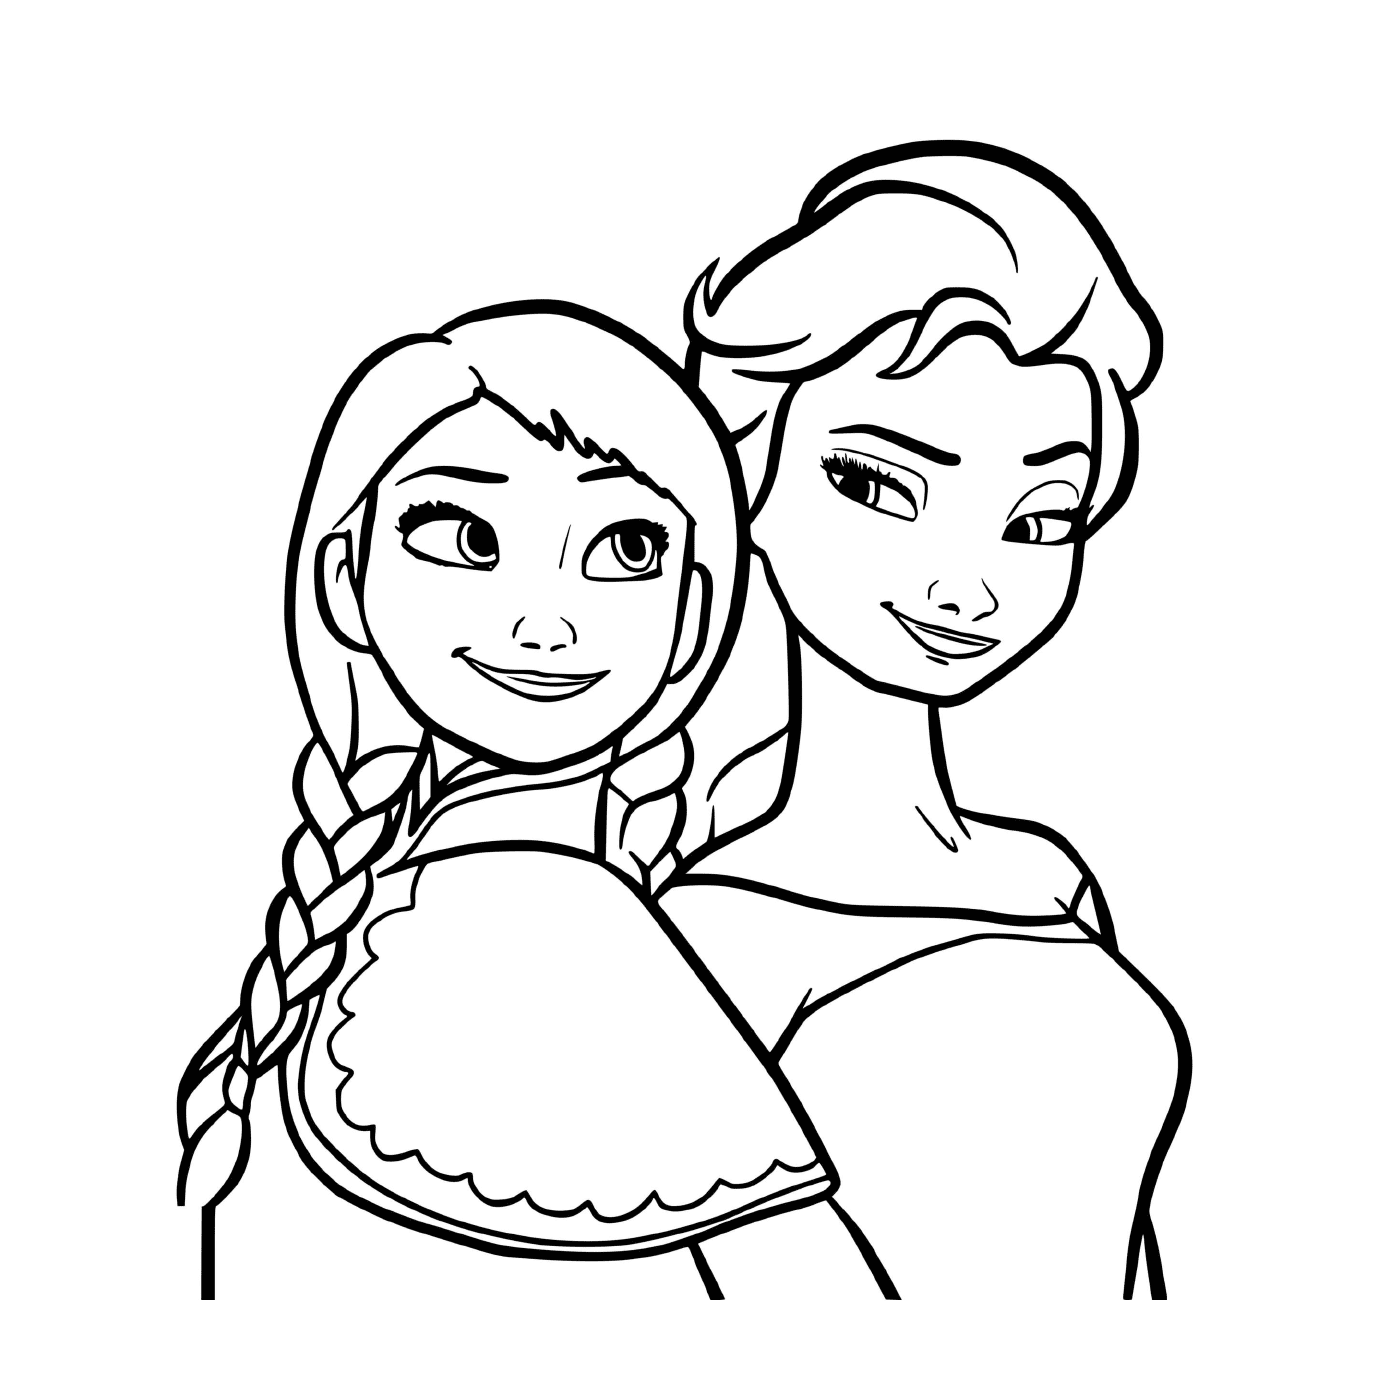  Le principesse del regno, Elsa e Anna 